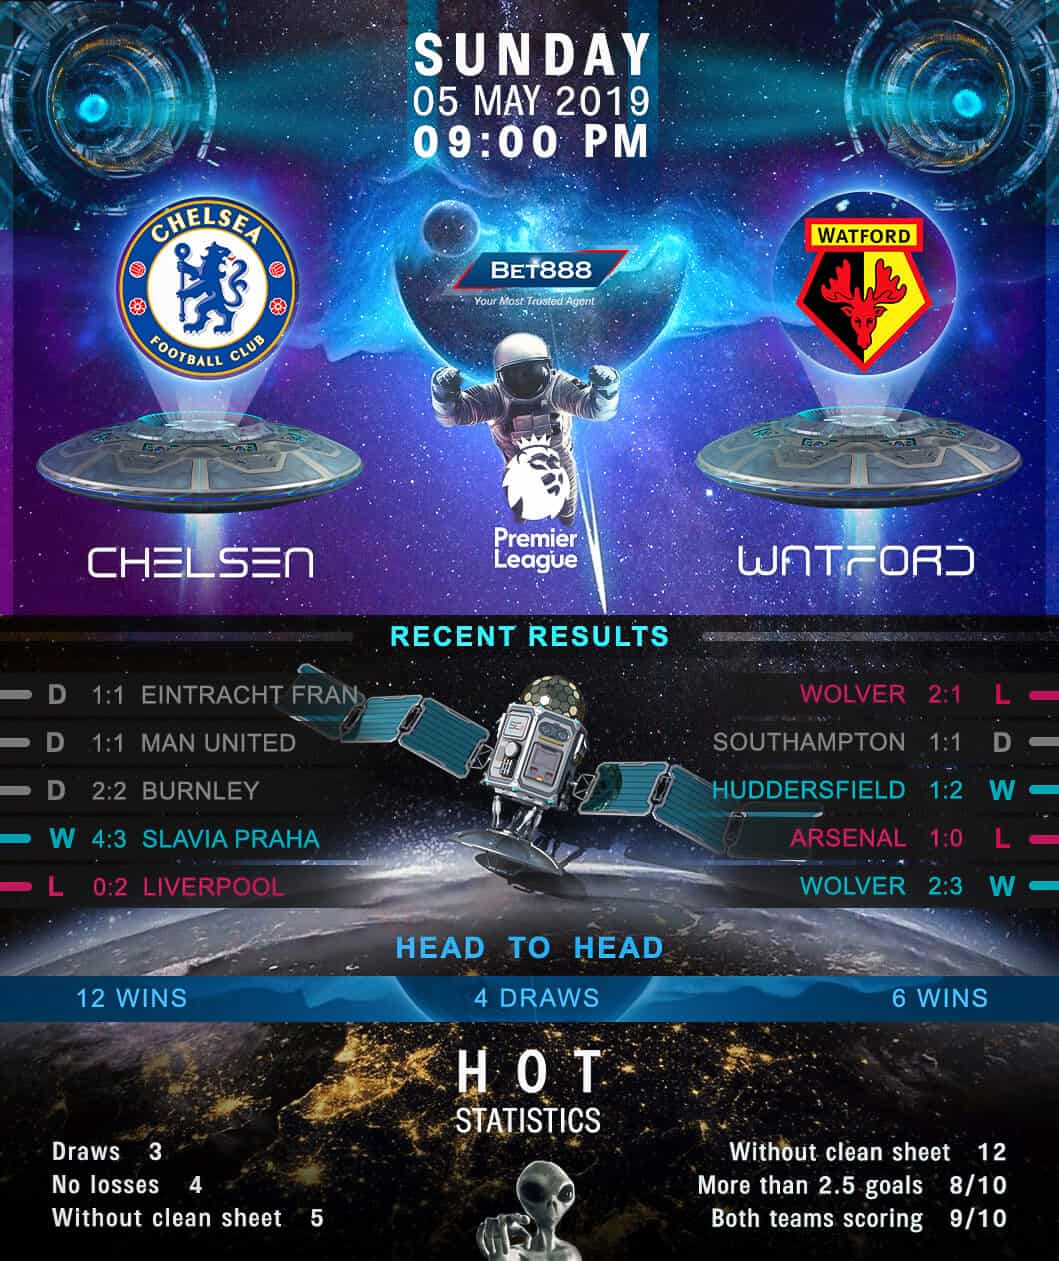 Chelsea vs Watford﻿ 05/05/19